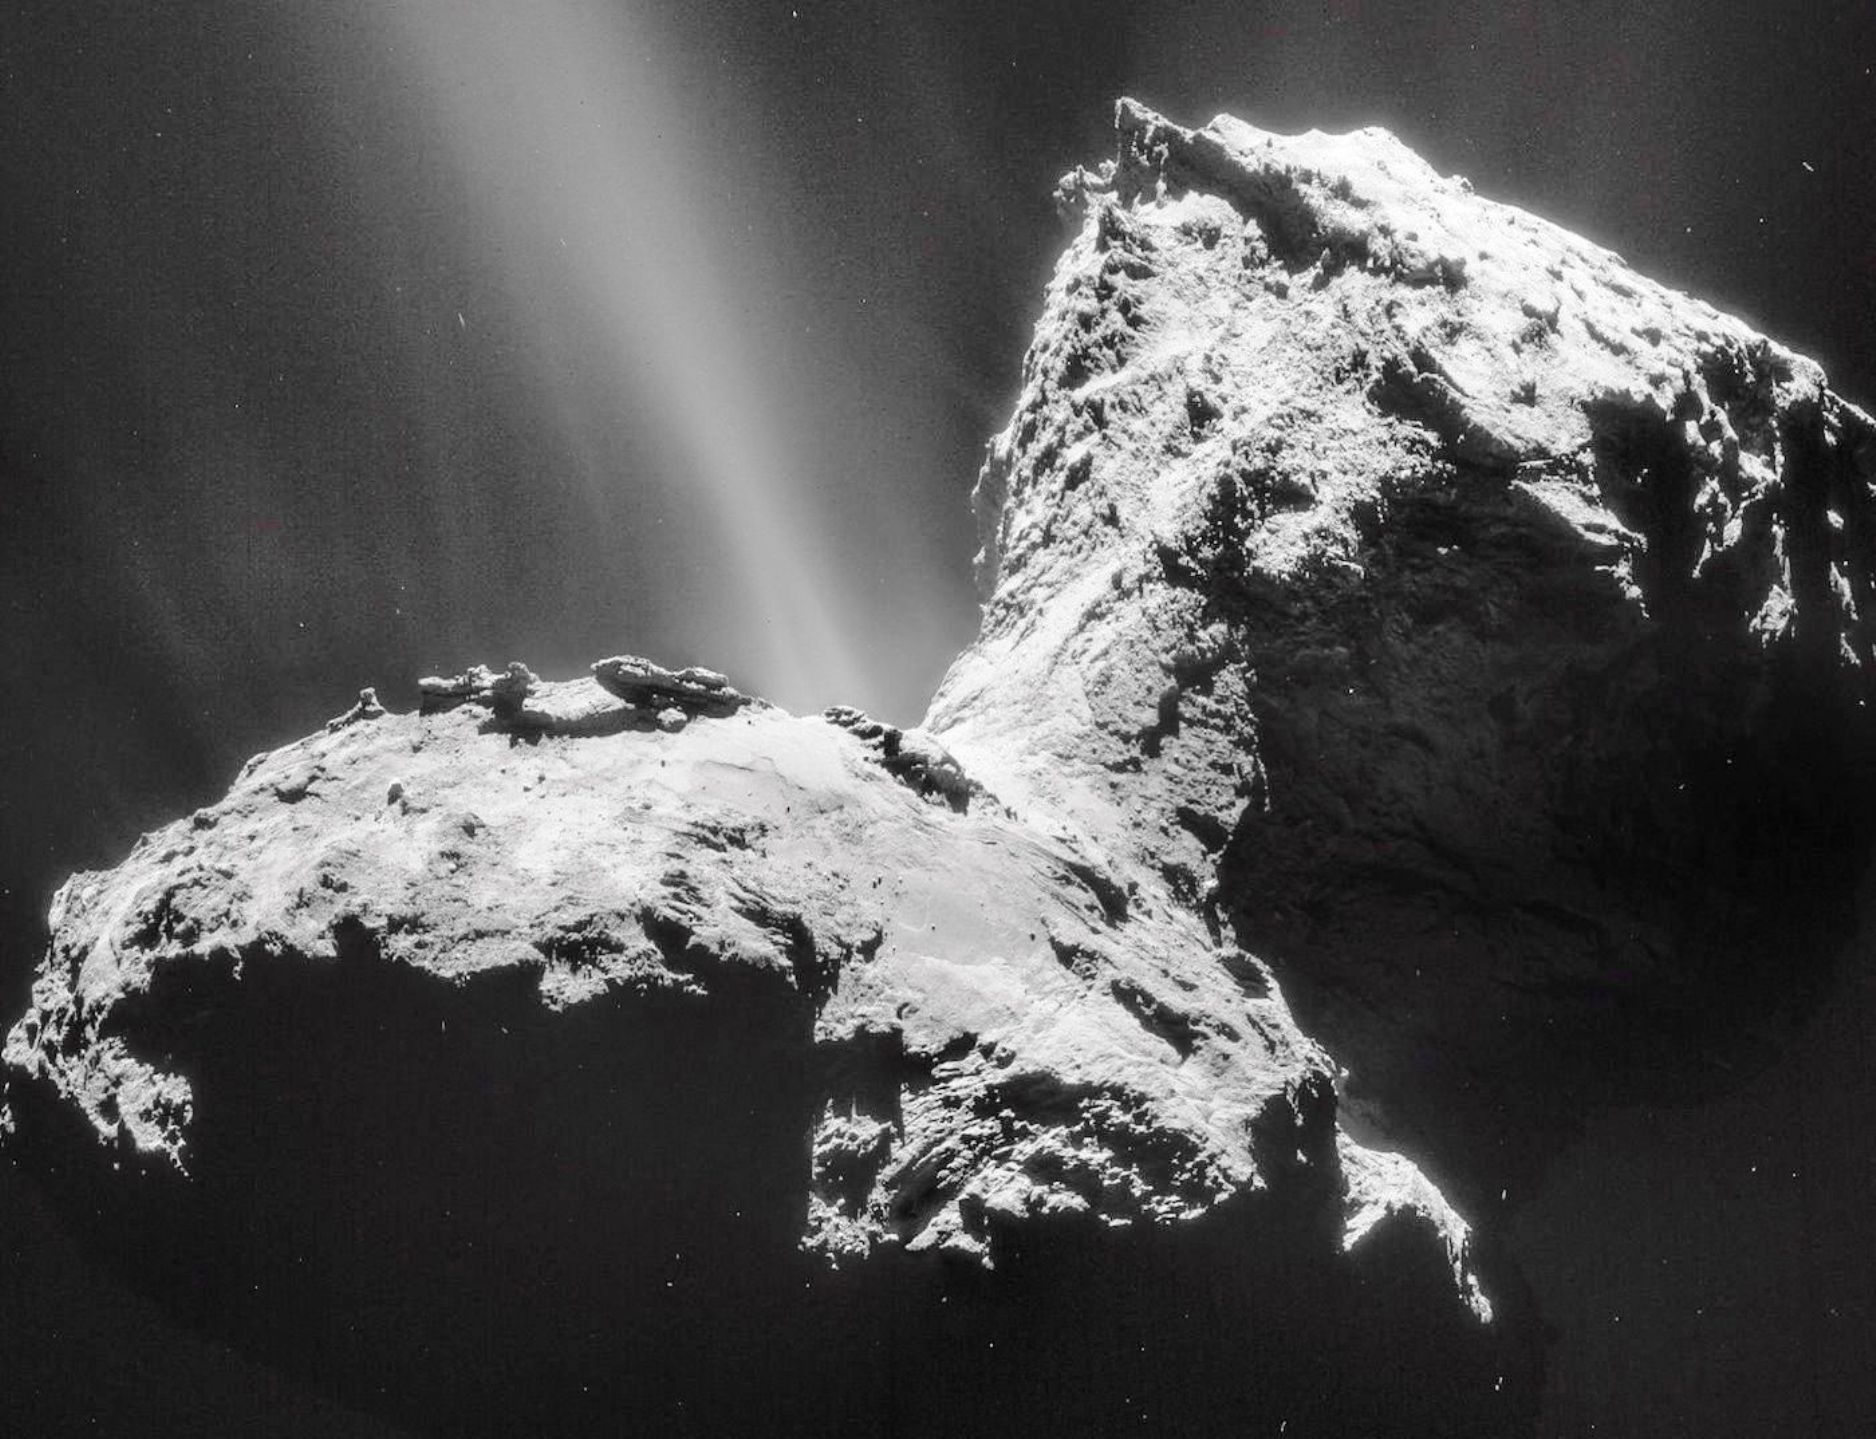 Tchouri photographiée avec la NavCam de Rosetta le 31 janvier 2015 (mosaïque de 4 images). Depuis de longs mois, l’activité la plus forte est observée dans la région du cou. © Esa, Rosetta, NavCam – CC BY-SA IGO 3.0